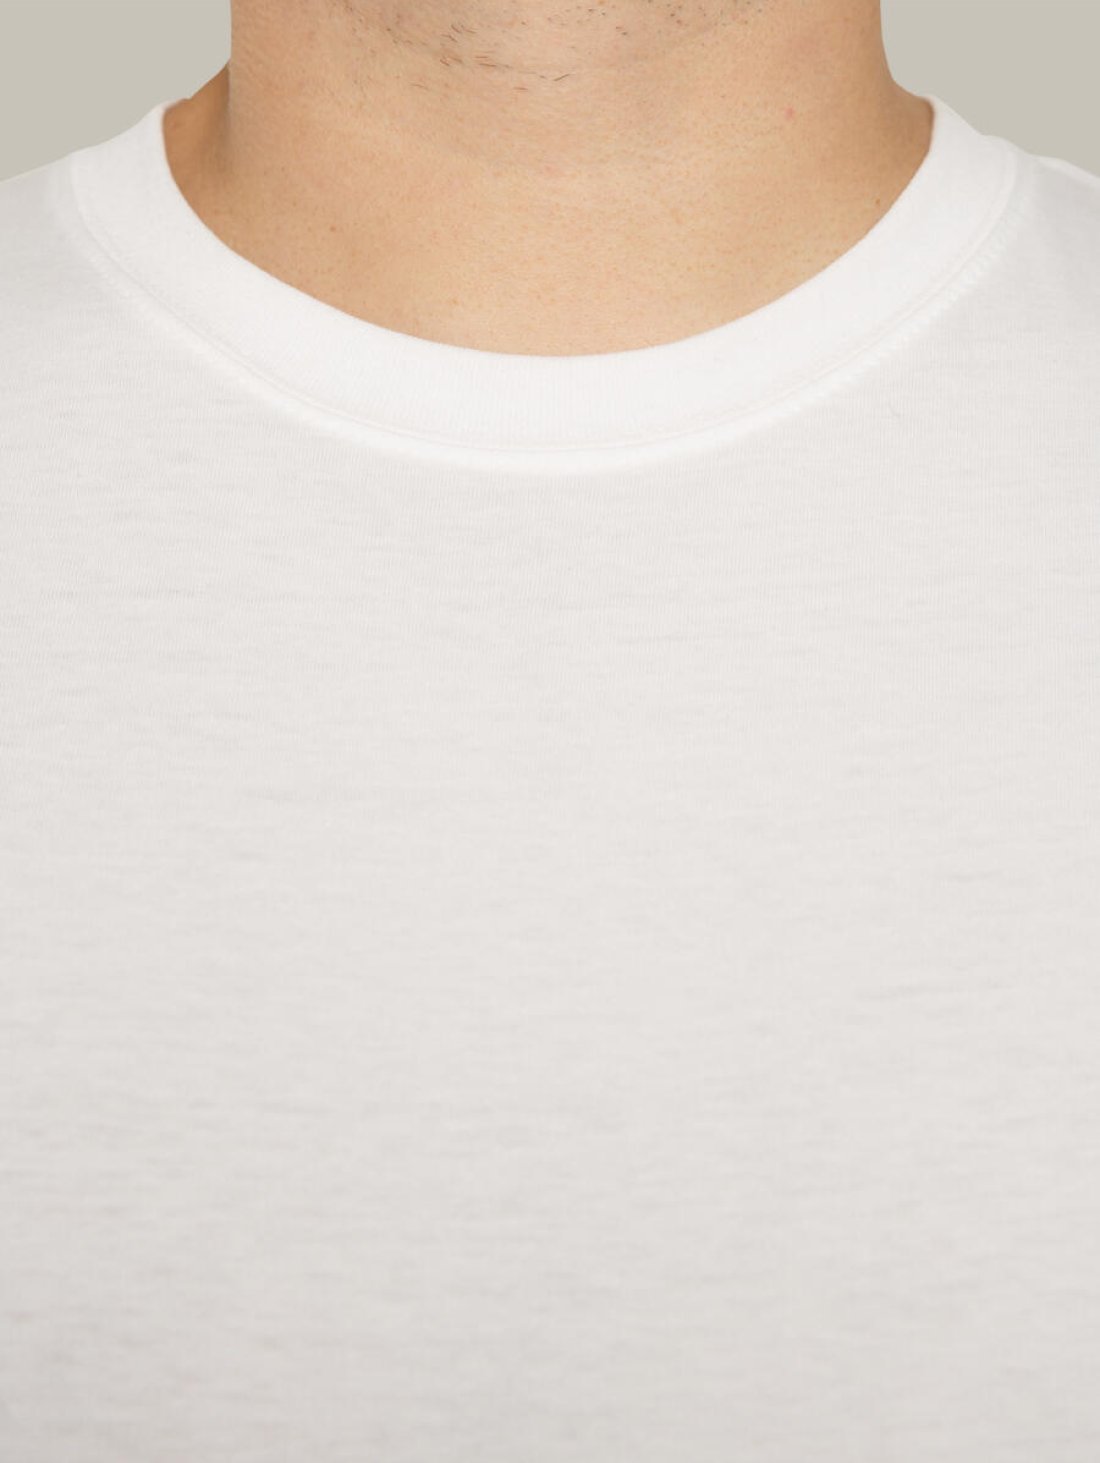 Чоловіча футболка, біла з принтом аватара Hopper 001